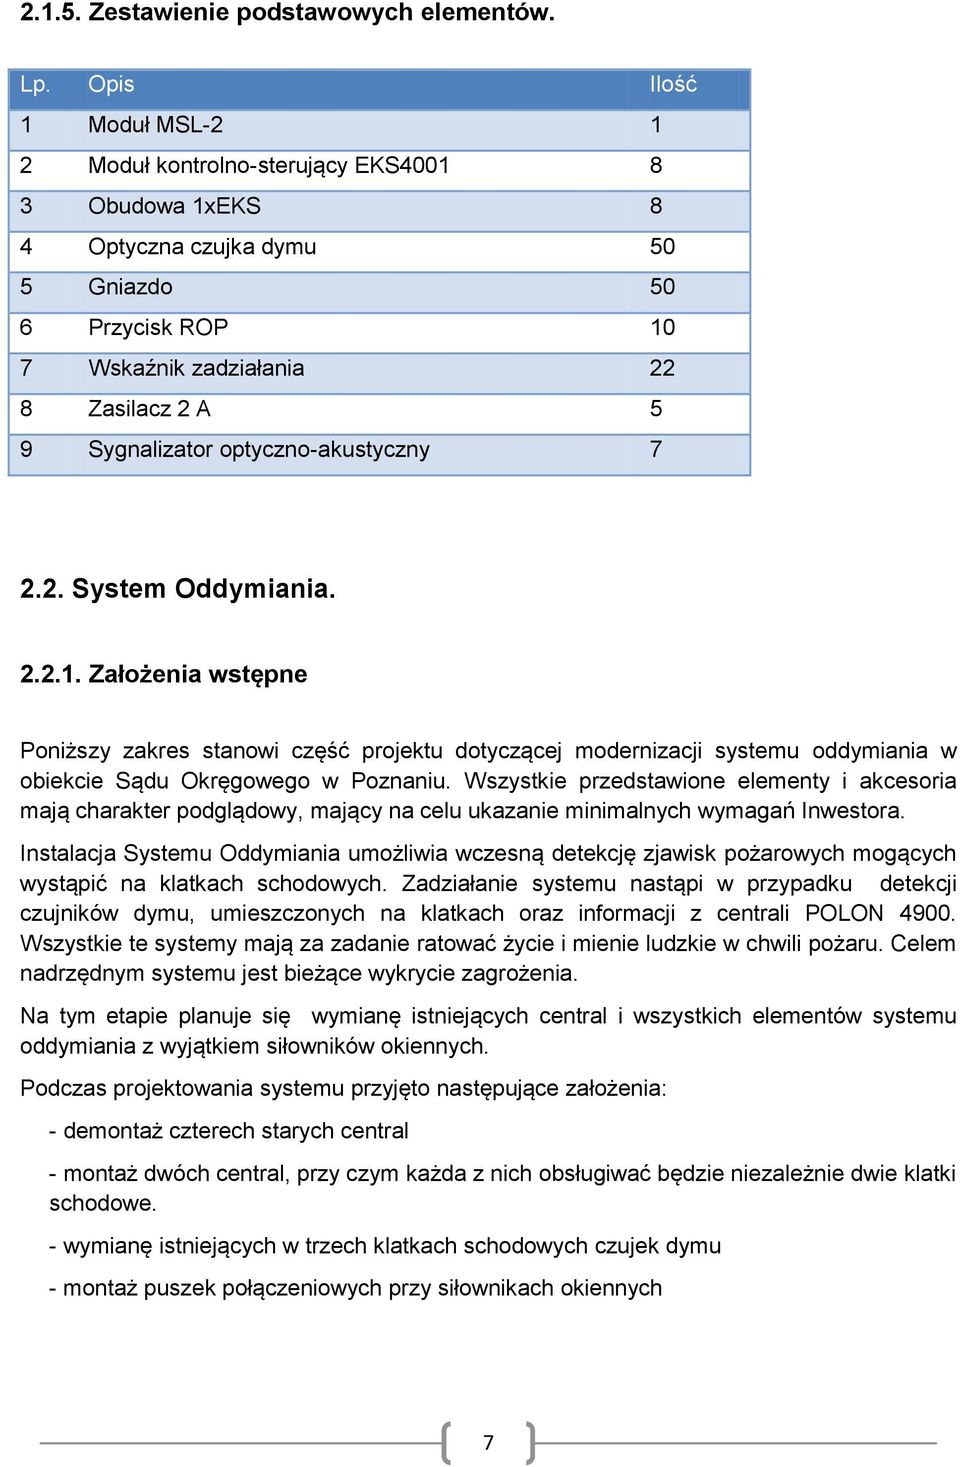 optyczno-akustyczny 7 2.2. System Oddymiania. 2.2.1. Założenia wstępne Poniższy zakres stanowi część projektu dotyczącej modernizacji systemu oddymiania w obiekcie Sądu Okręgowego w Poznaniu.